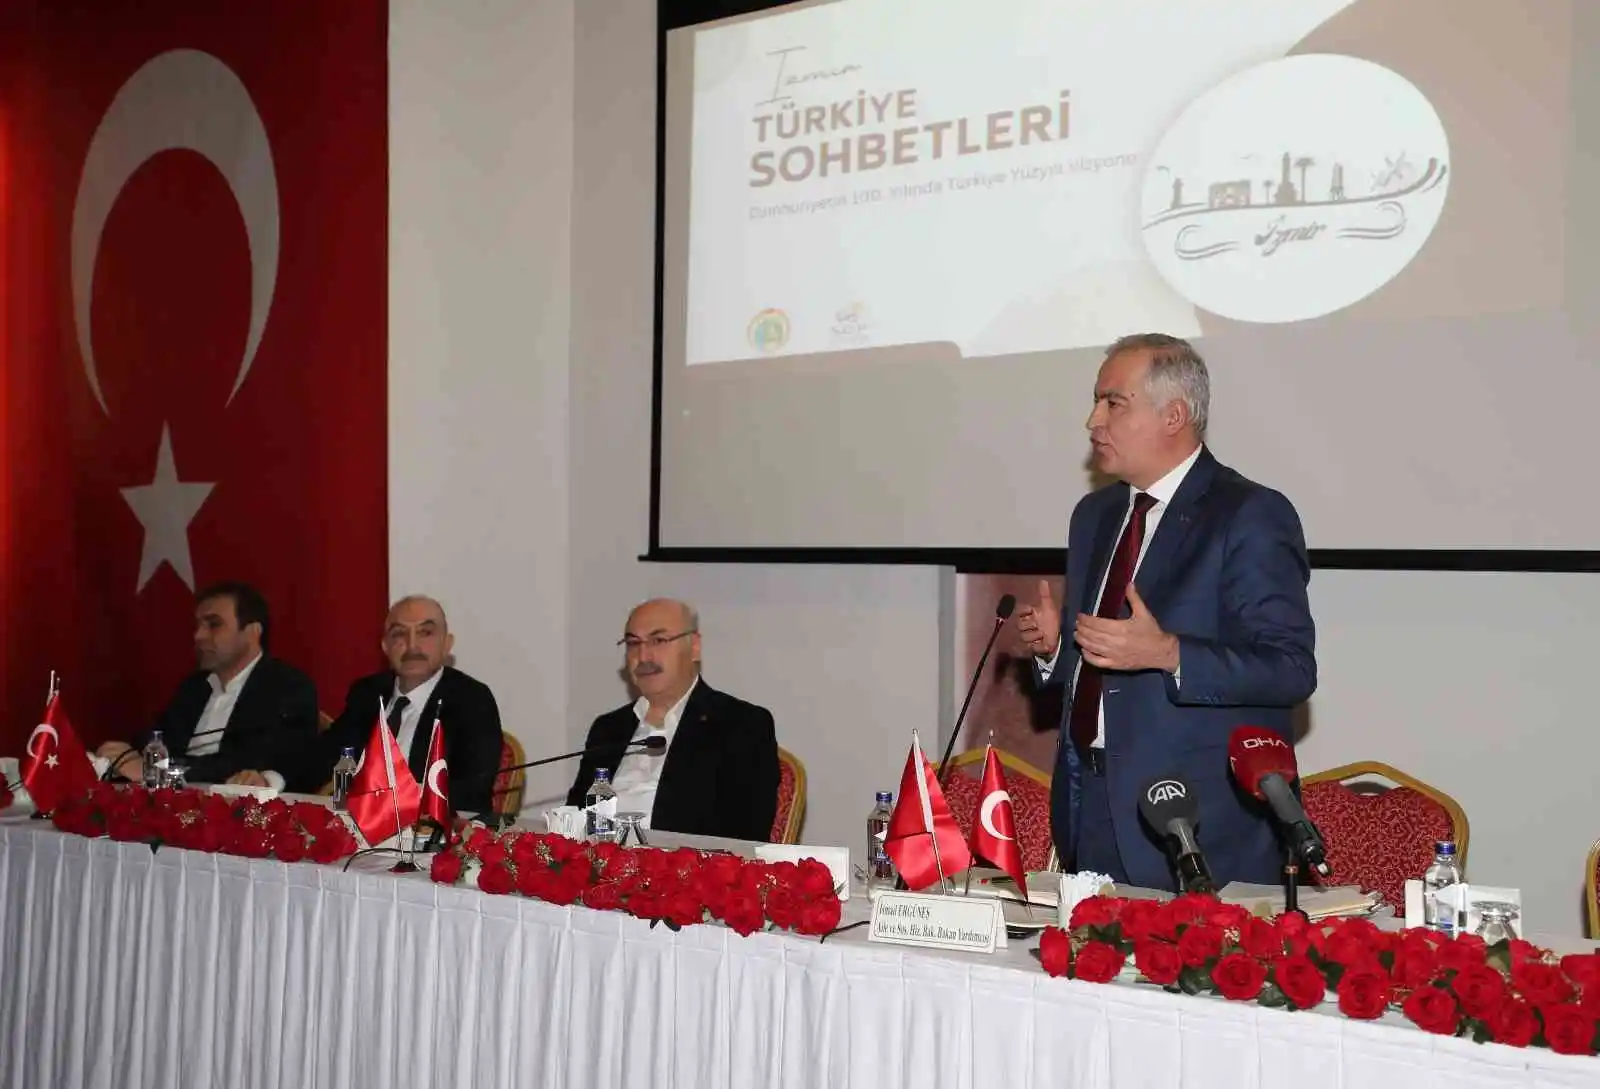 Uçum: “Cumhurbaşkanı Erdoğan ile tam bağımsız mücadelemize son hızla devam ediyoruz”
